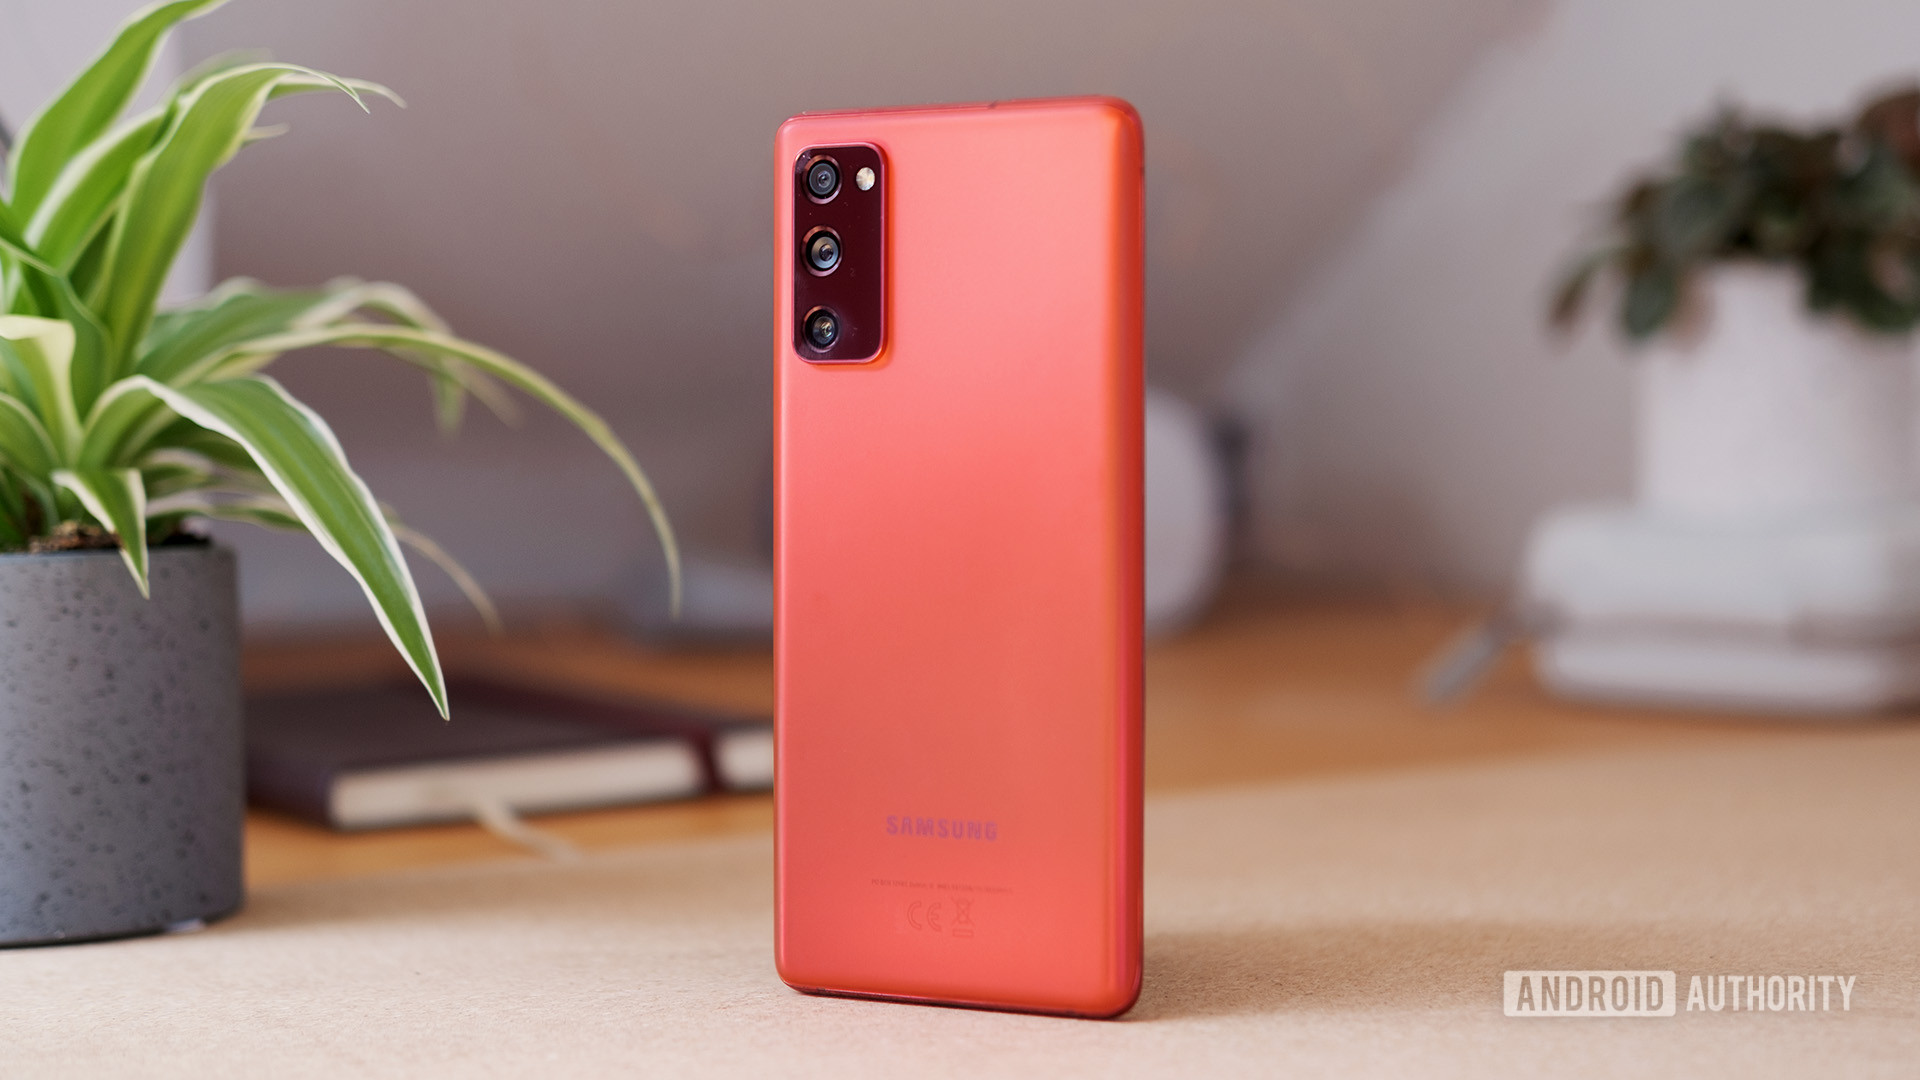 Samsung Galaxy S20 FE jalur warna merah menunjukkan bagian belakang ponsel dan kamera.